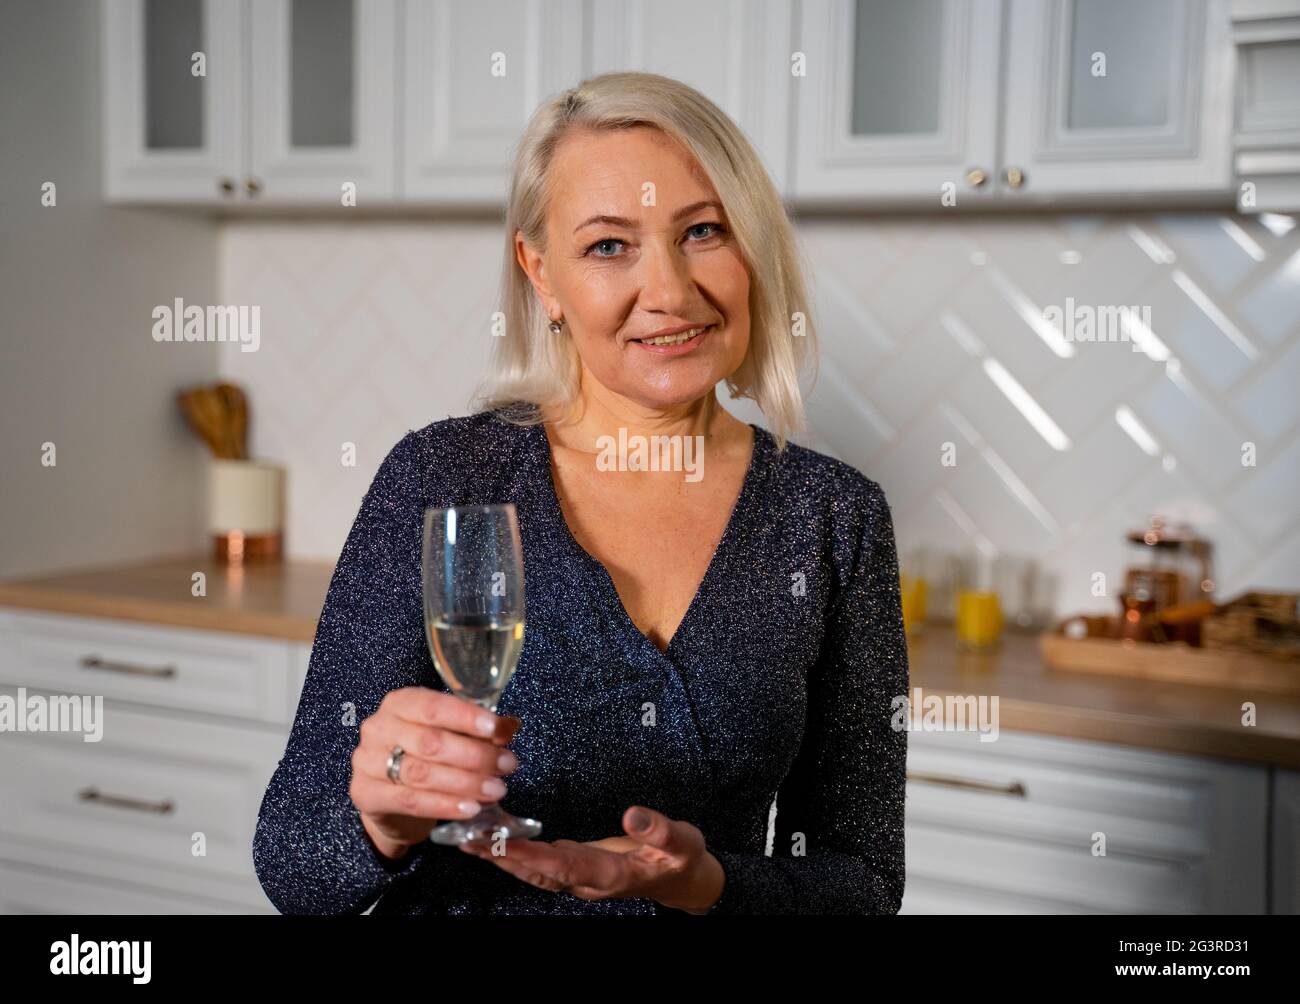 Ritratto di nonna sorridente in bel vestito festivo in piedi in elegante  cucina che tiene un bicchiere di champagne che progetta di fare un brindisi  e Wish Buon compleanno. Concetto di celebrazione